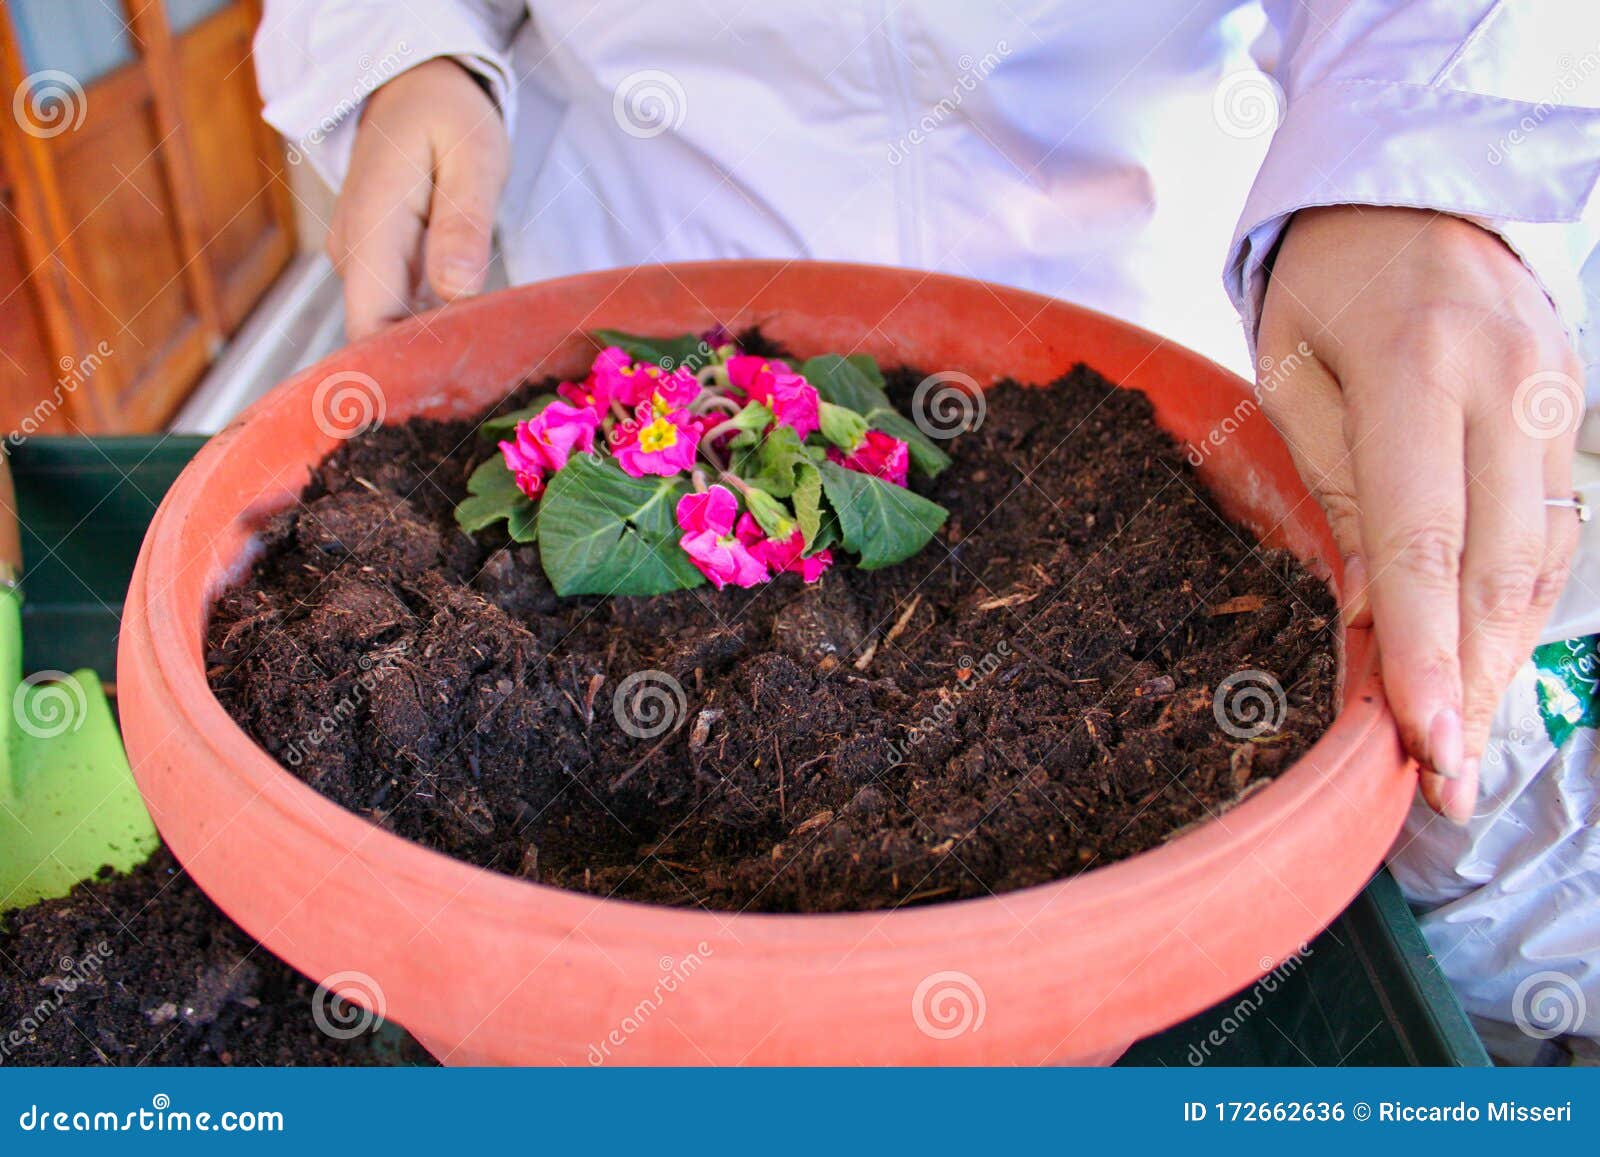 blue flowers in a pot-gardening